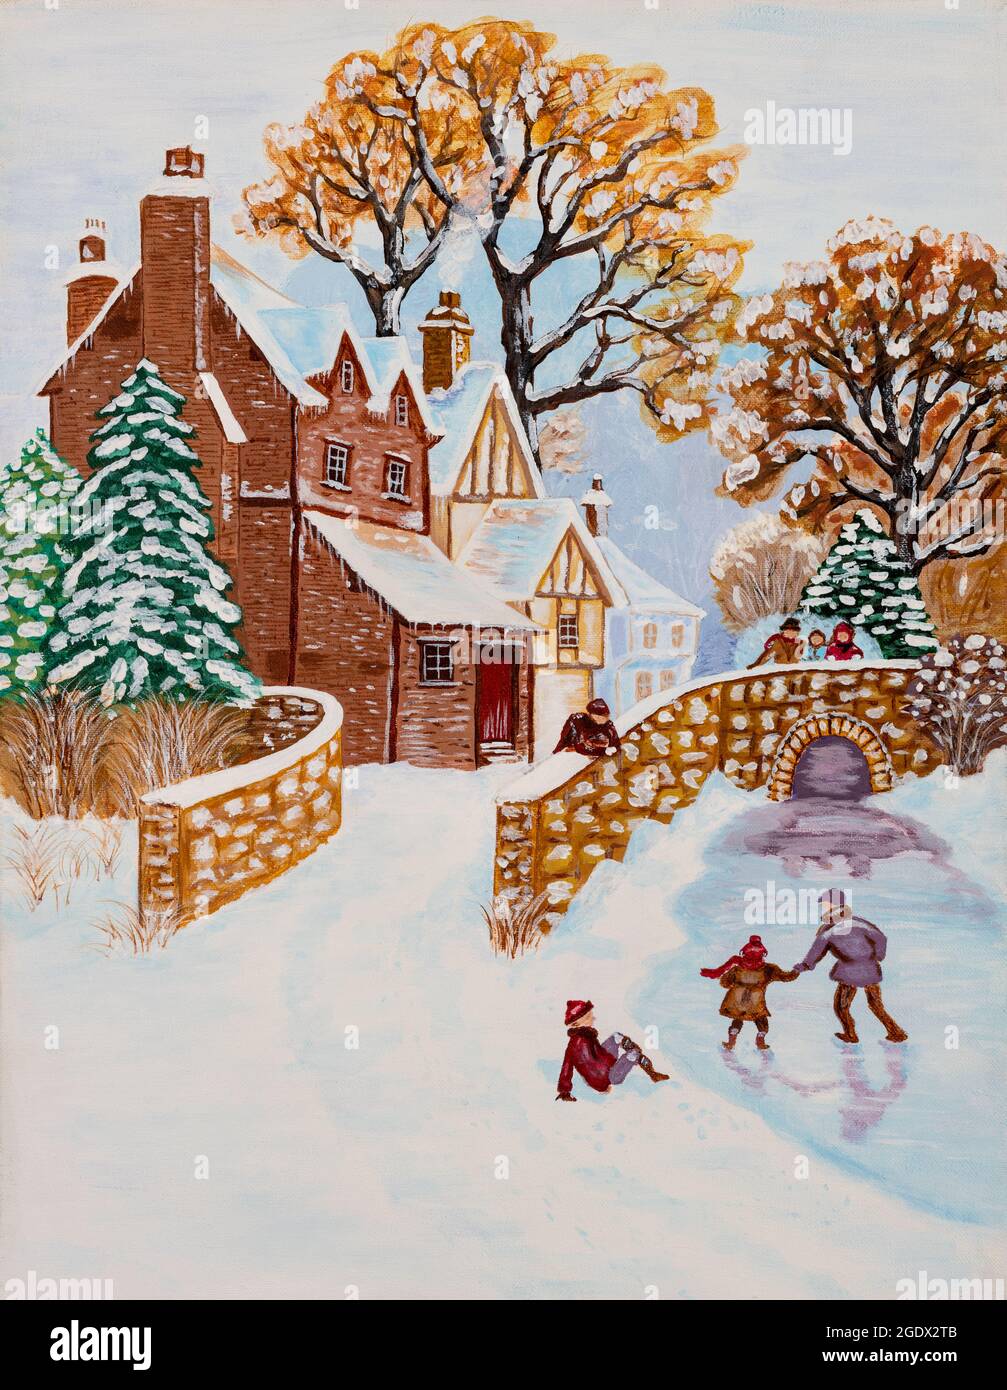 Peinture à l'huile originale de style naïf d'une scène d'hiver rurale avec des enfants jouant et patinant près d'un ruisseau et d'un pont. Concept des fêtes de Noël. Banque D'Images